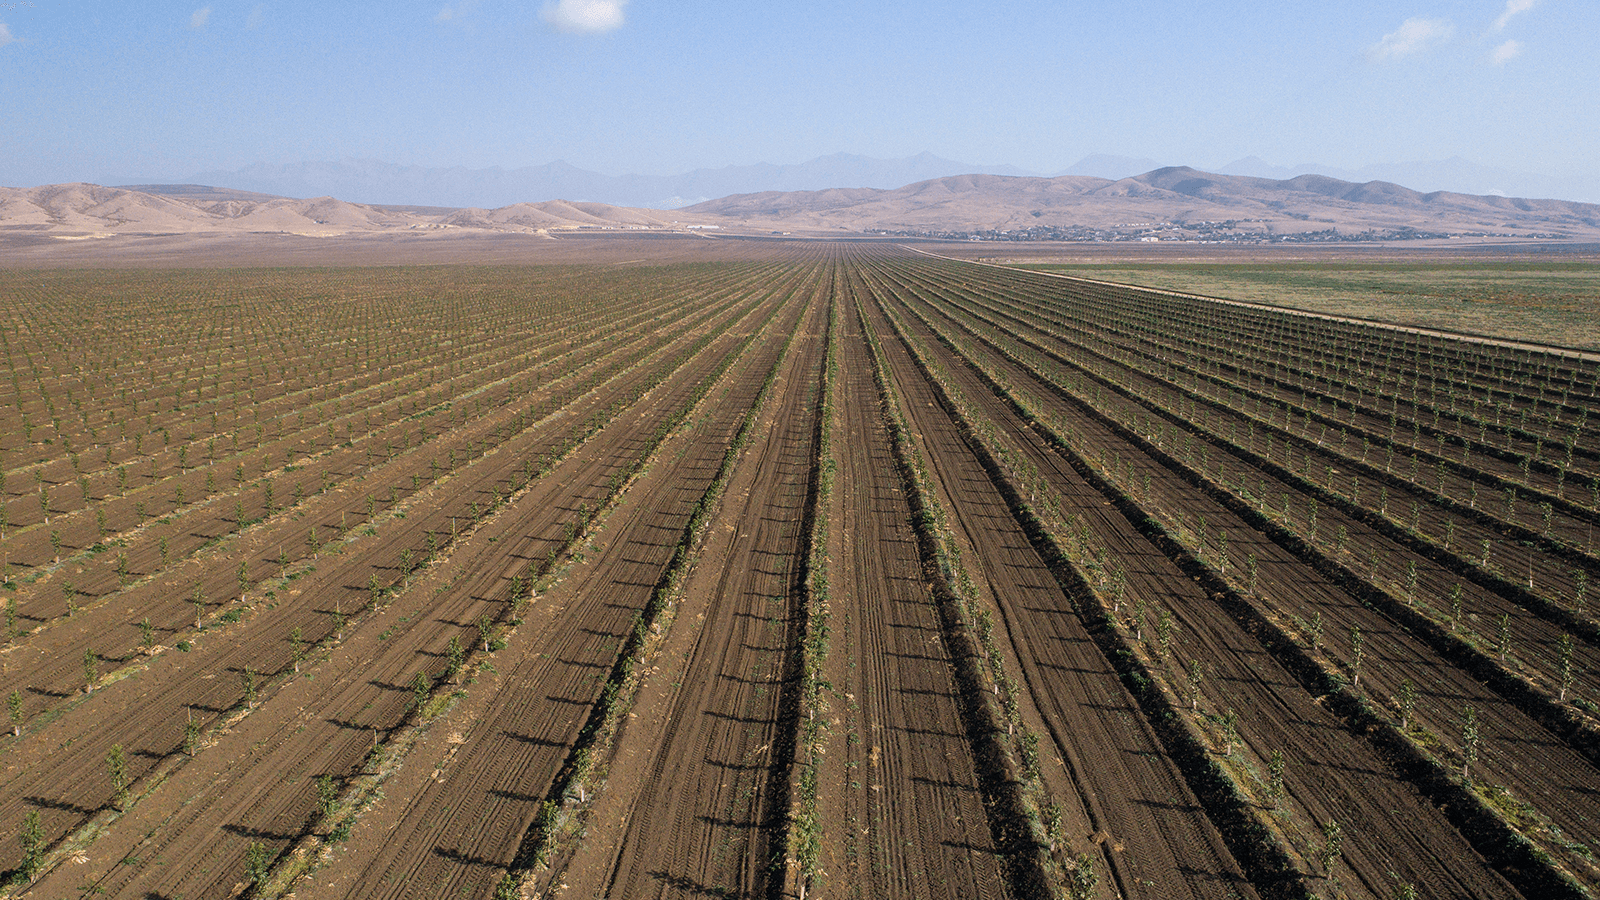 Ventajas y riesgos de invertir en agricultura en México